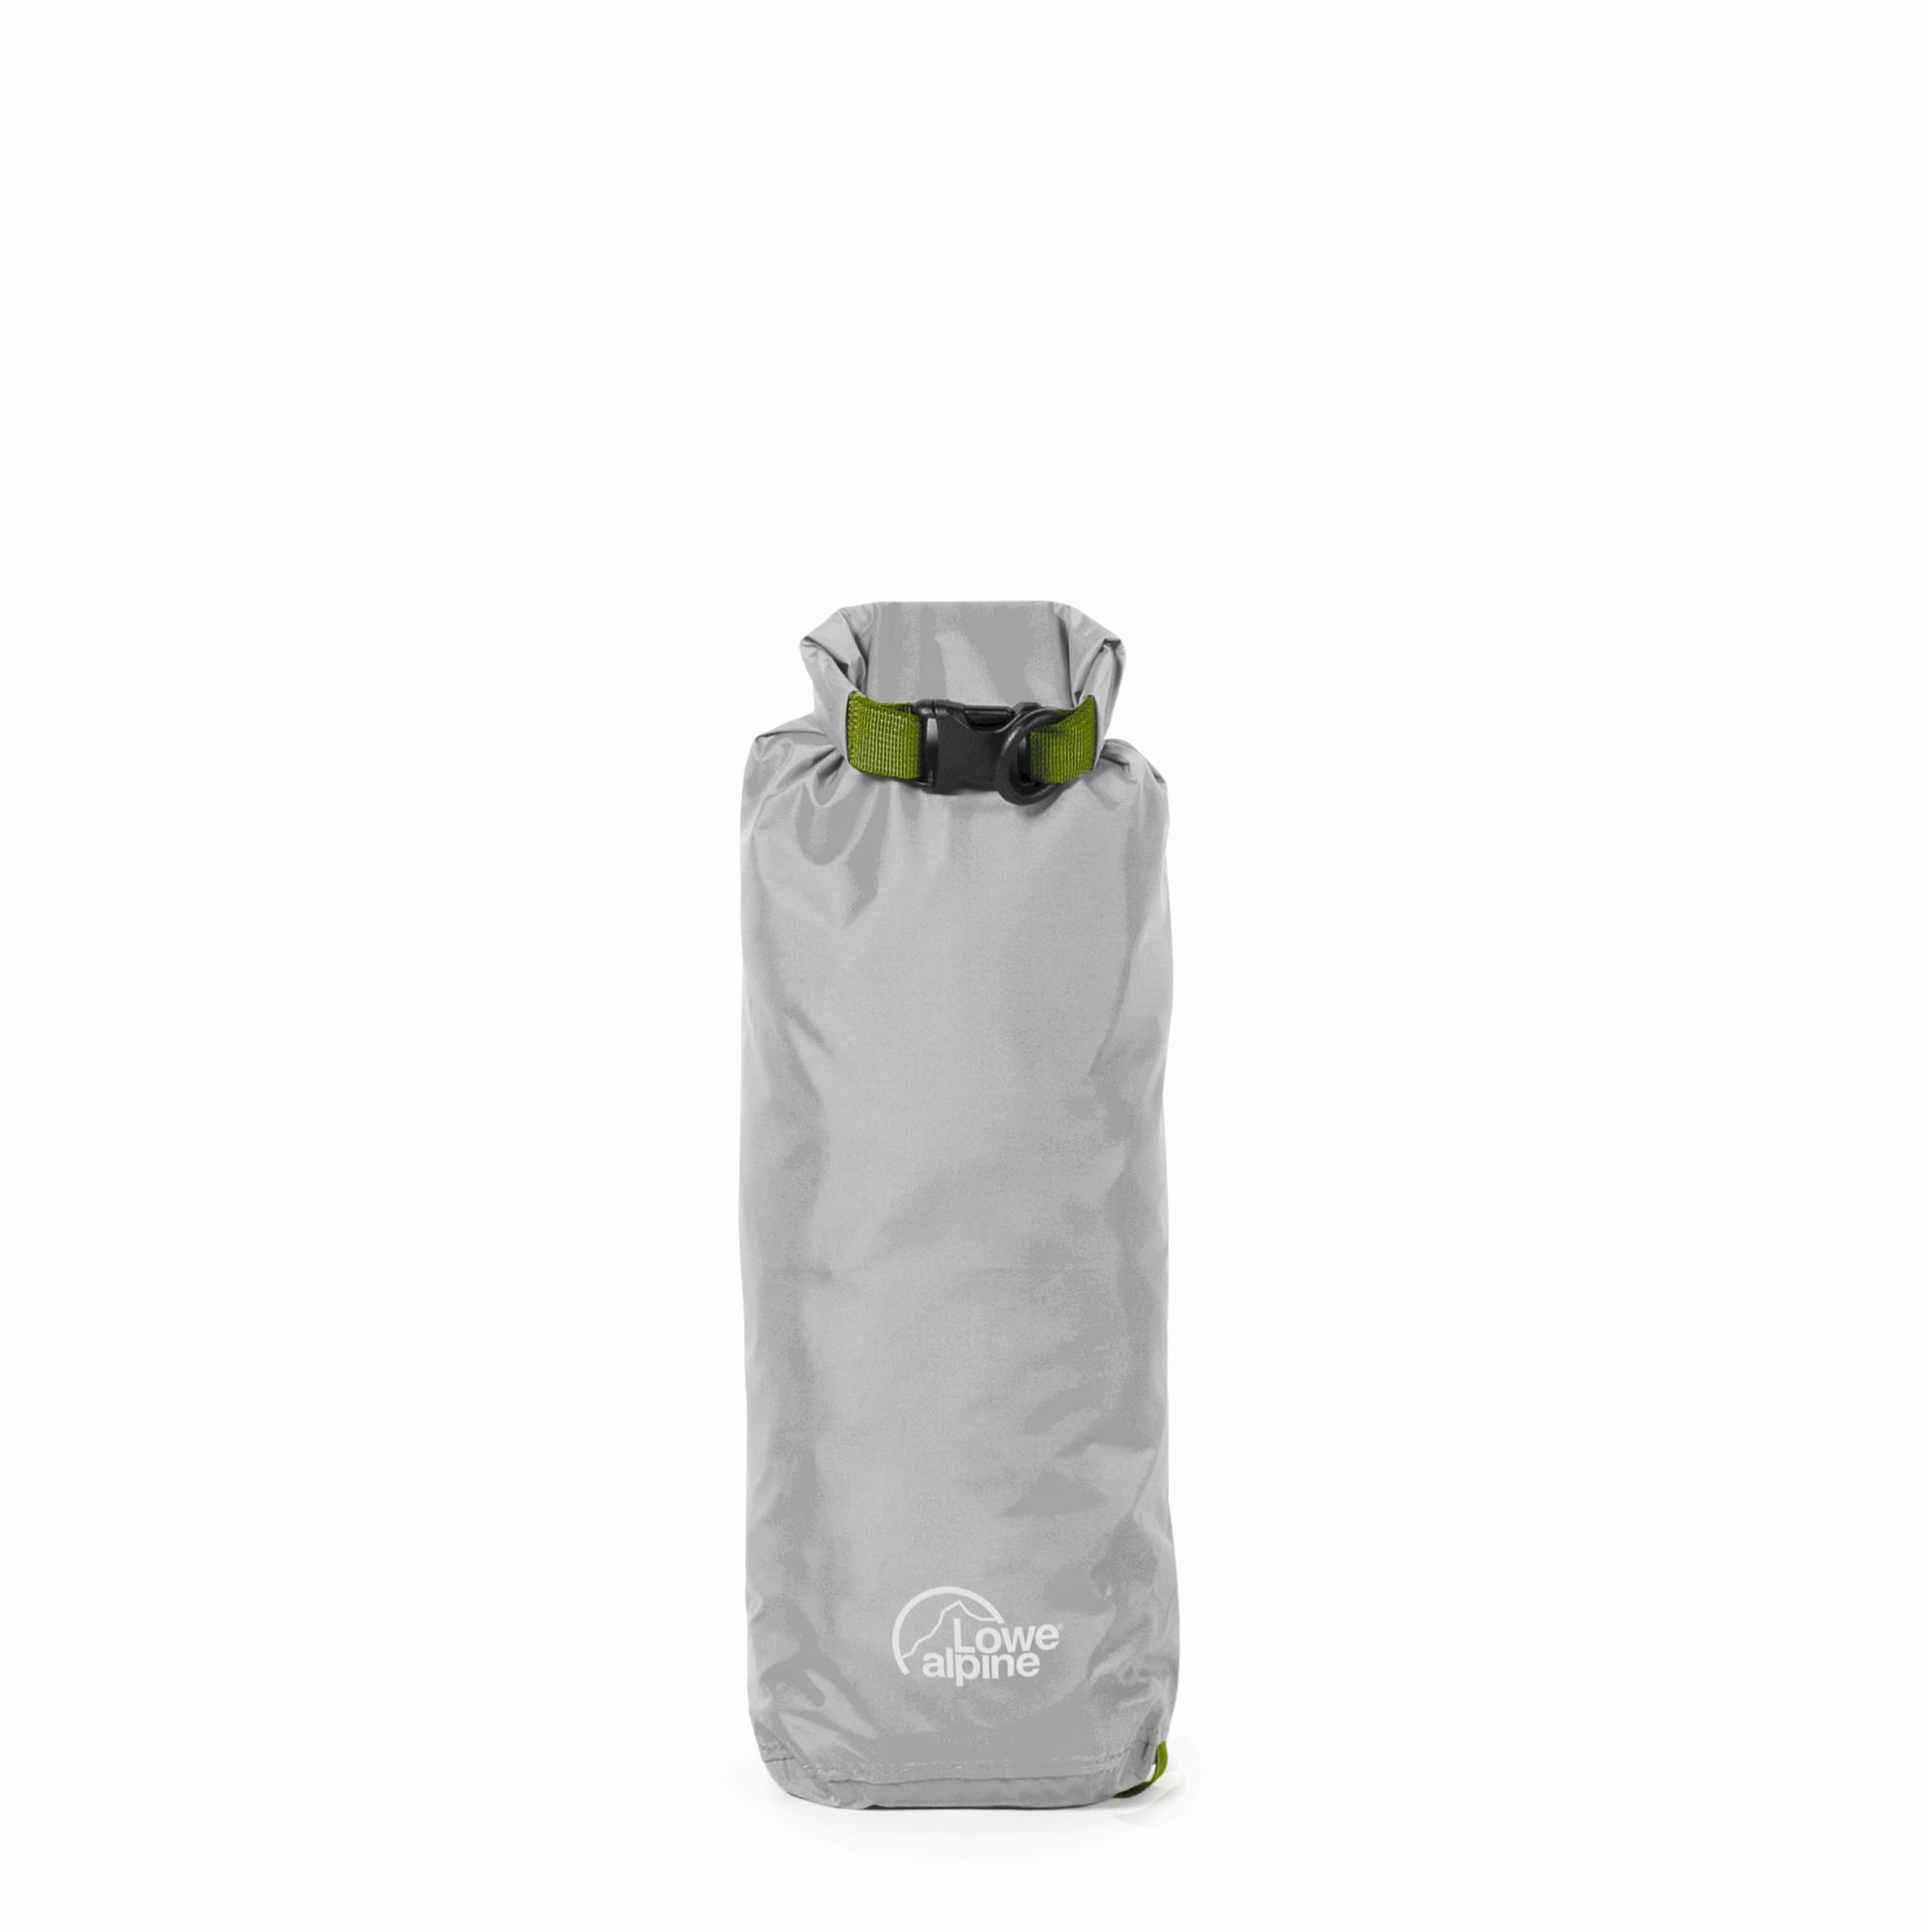 Lowe Alpine Ultralite Drysack - Waterproof bag | Hardloop